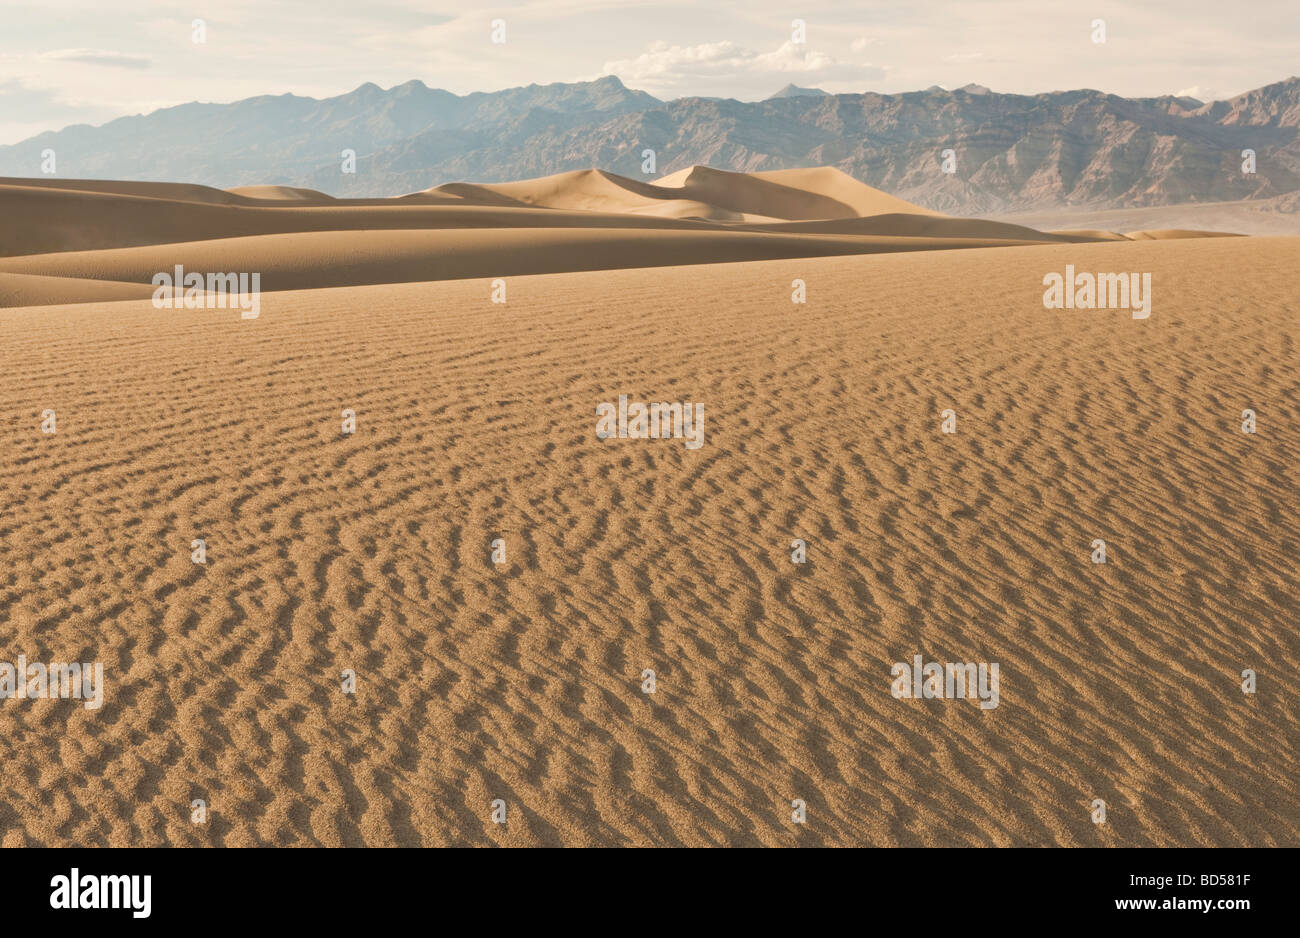 Sand dunes in the desert Stock Photo